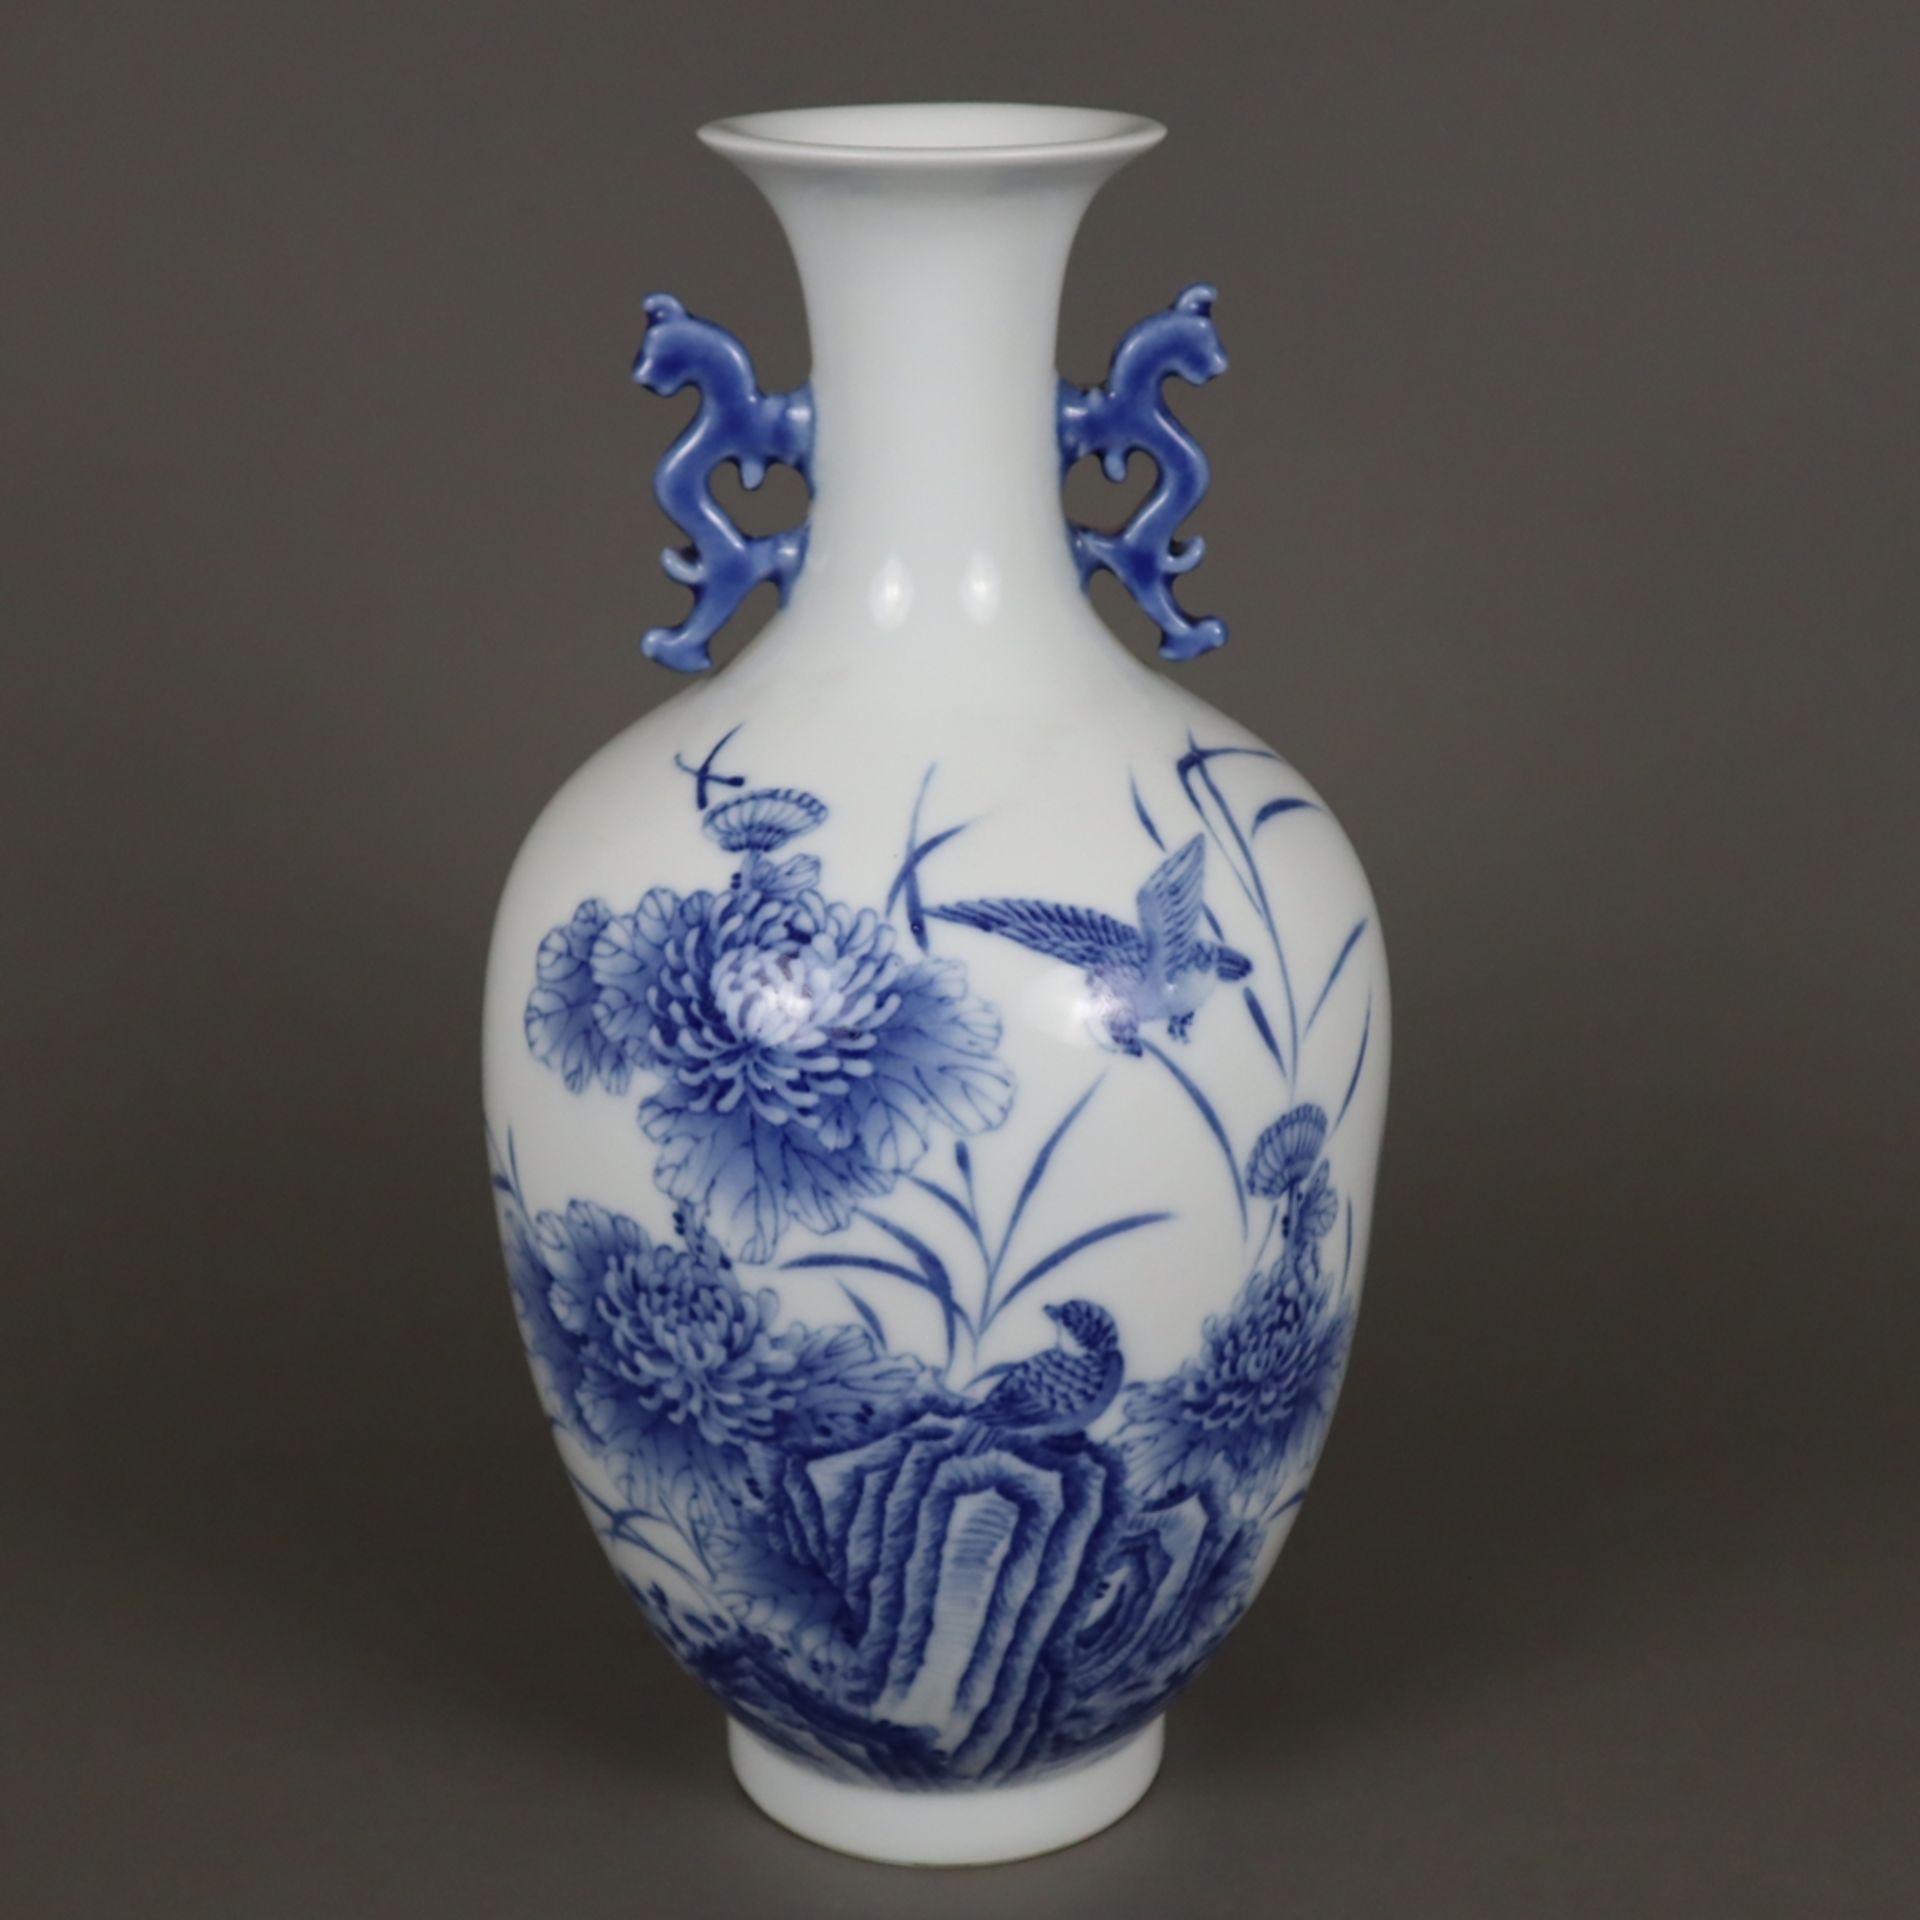 Blau-weiße Vase - China, Porzellan, ovoide Form auf schmalem Standring, in Unterglasurblau bemalt m